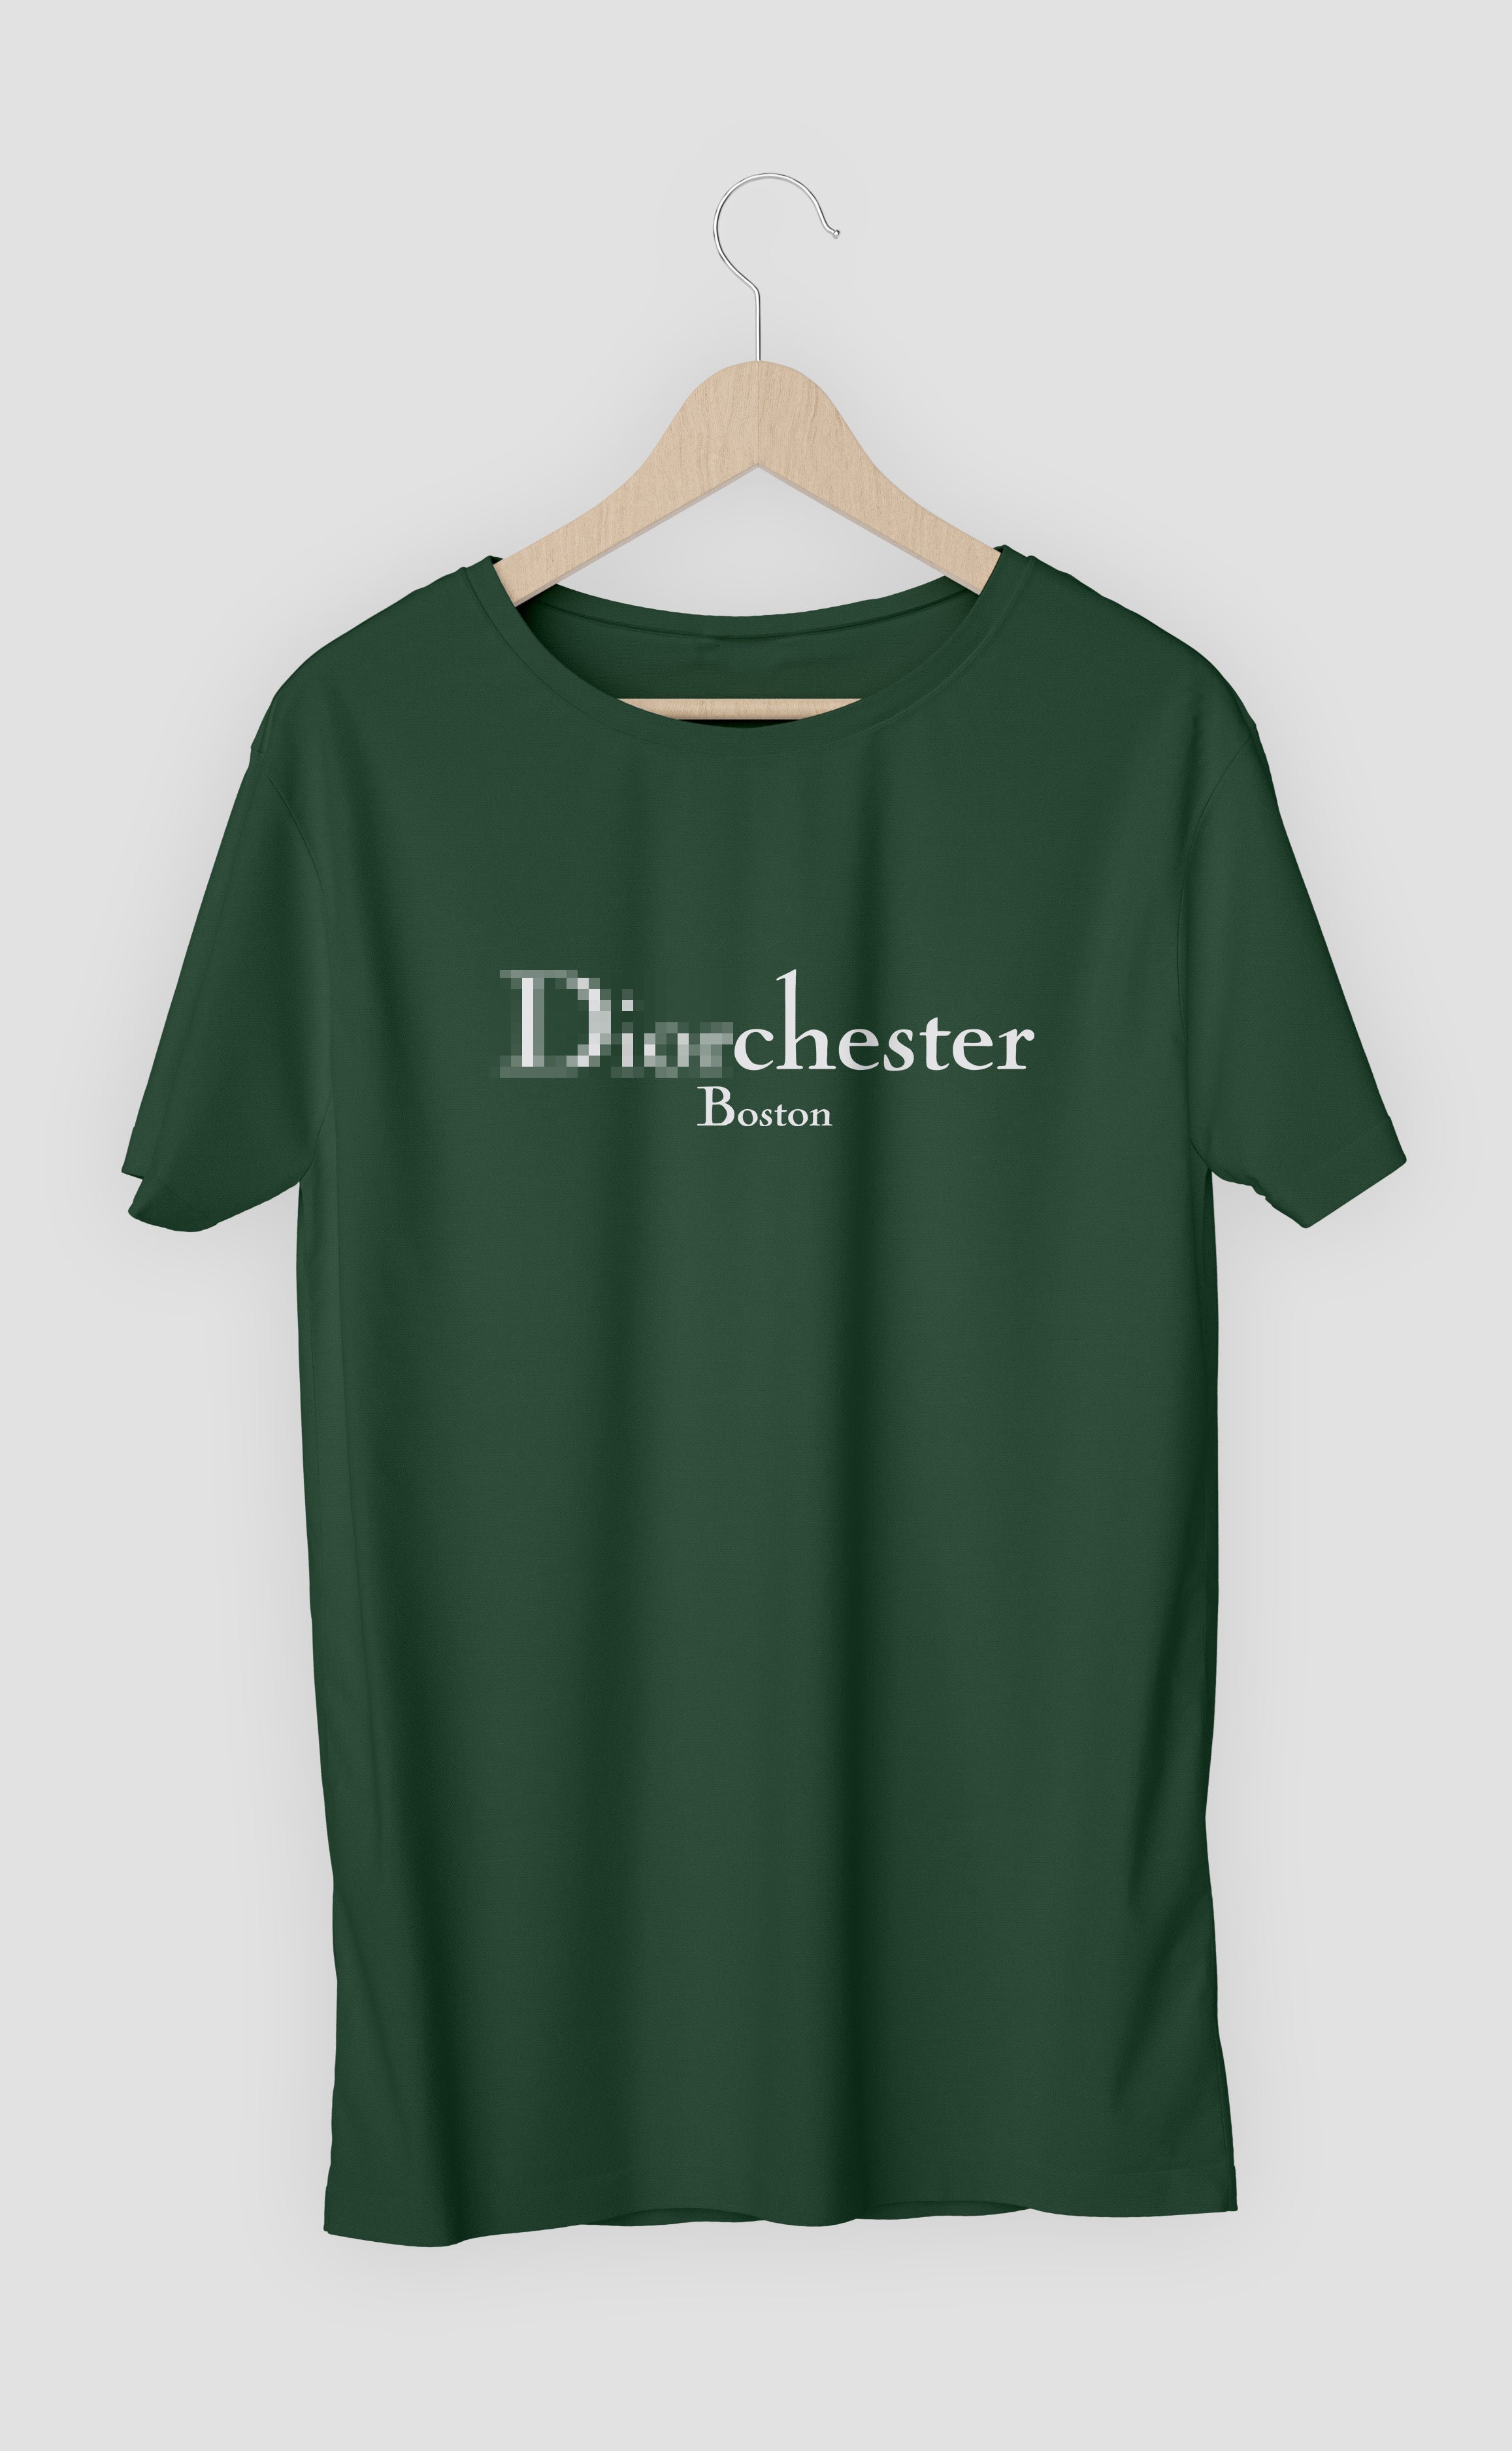 Diorchester T-Shirt